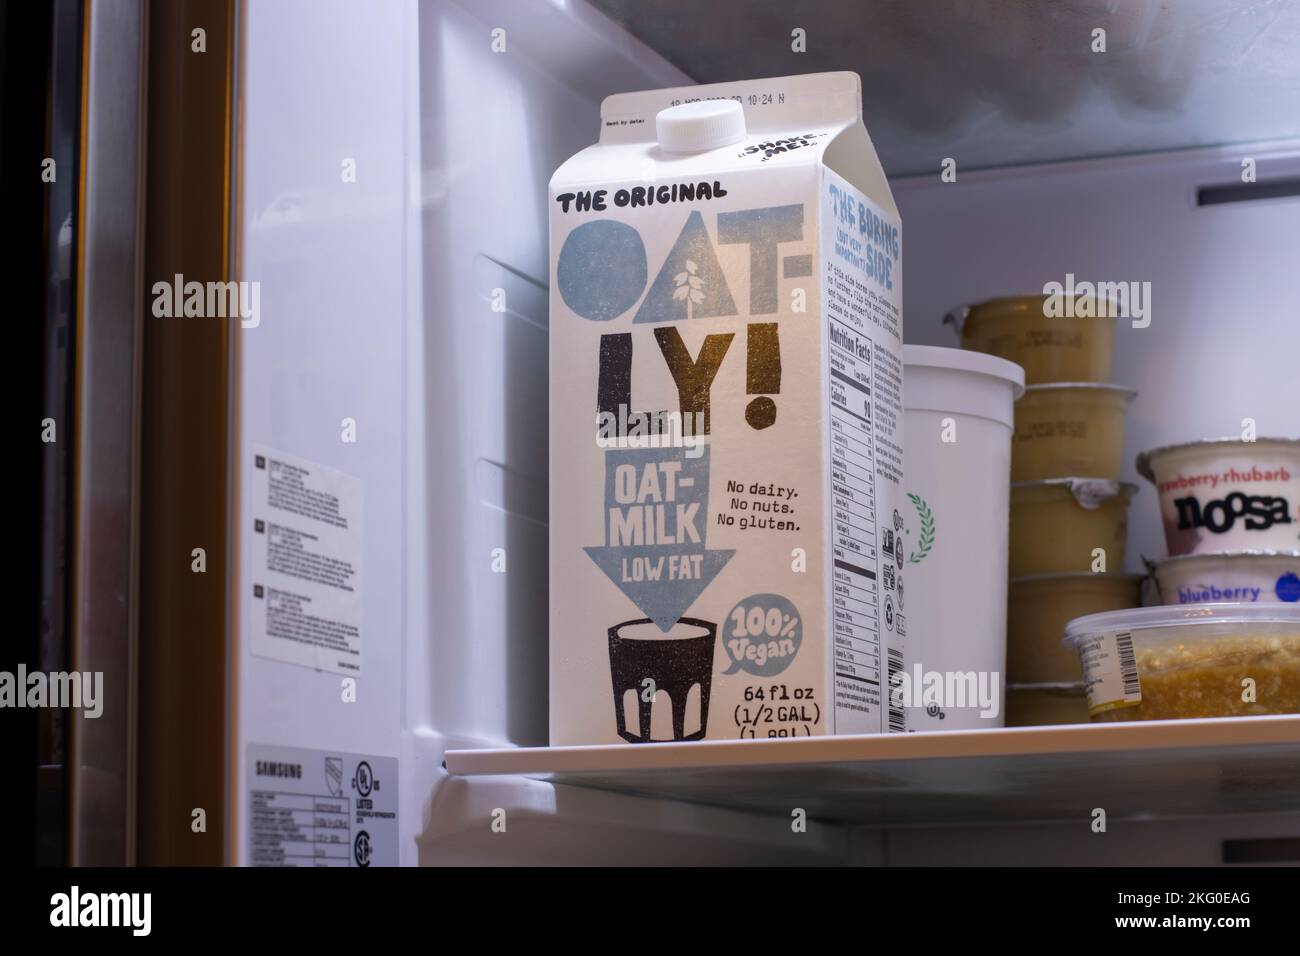 Una scatola di latte di avena a basso contenuto di grassi di marca Oatly è vista in un frigorifero. Oatly Group AB è un'azienda alimentare svedese che produce... Foto Stock